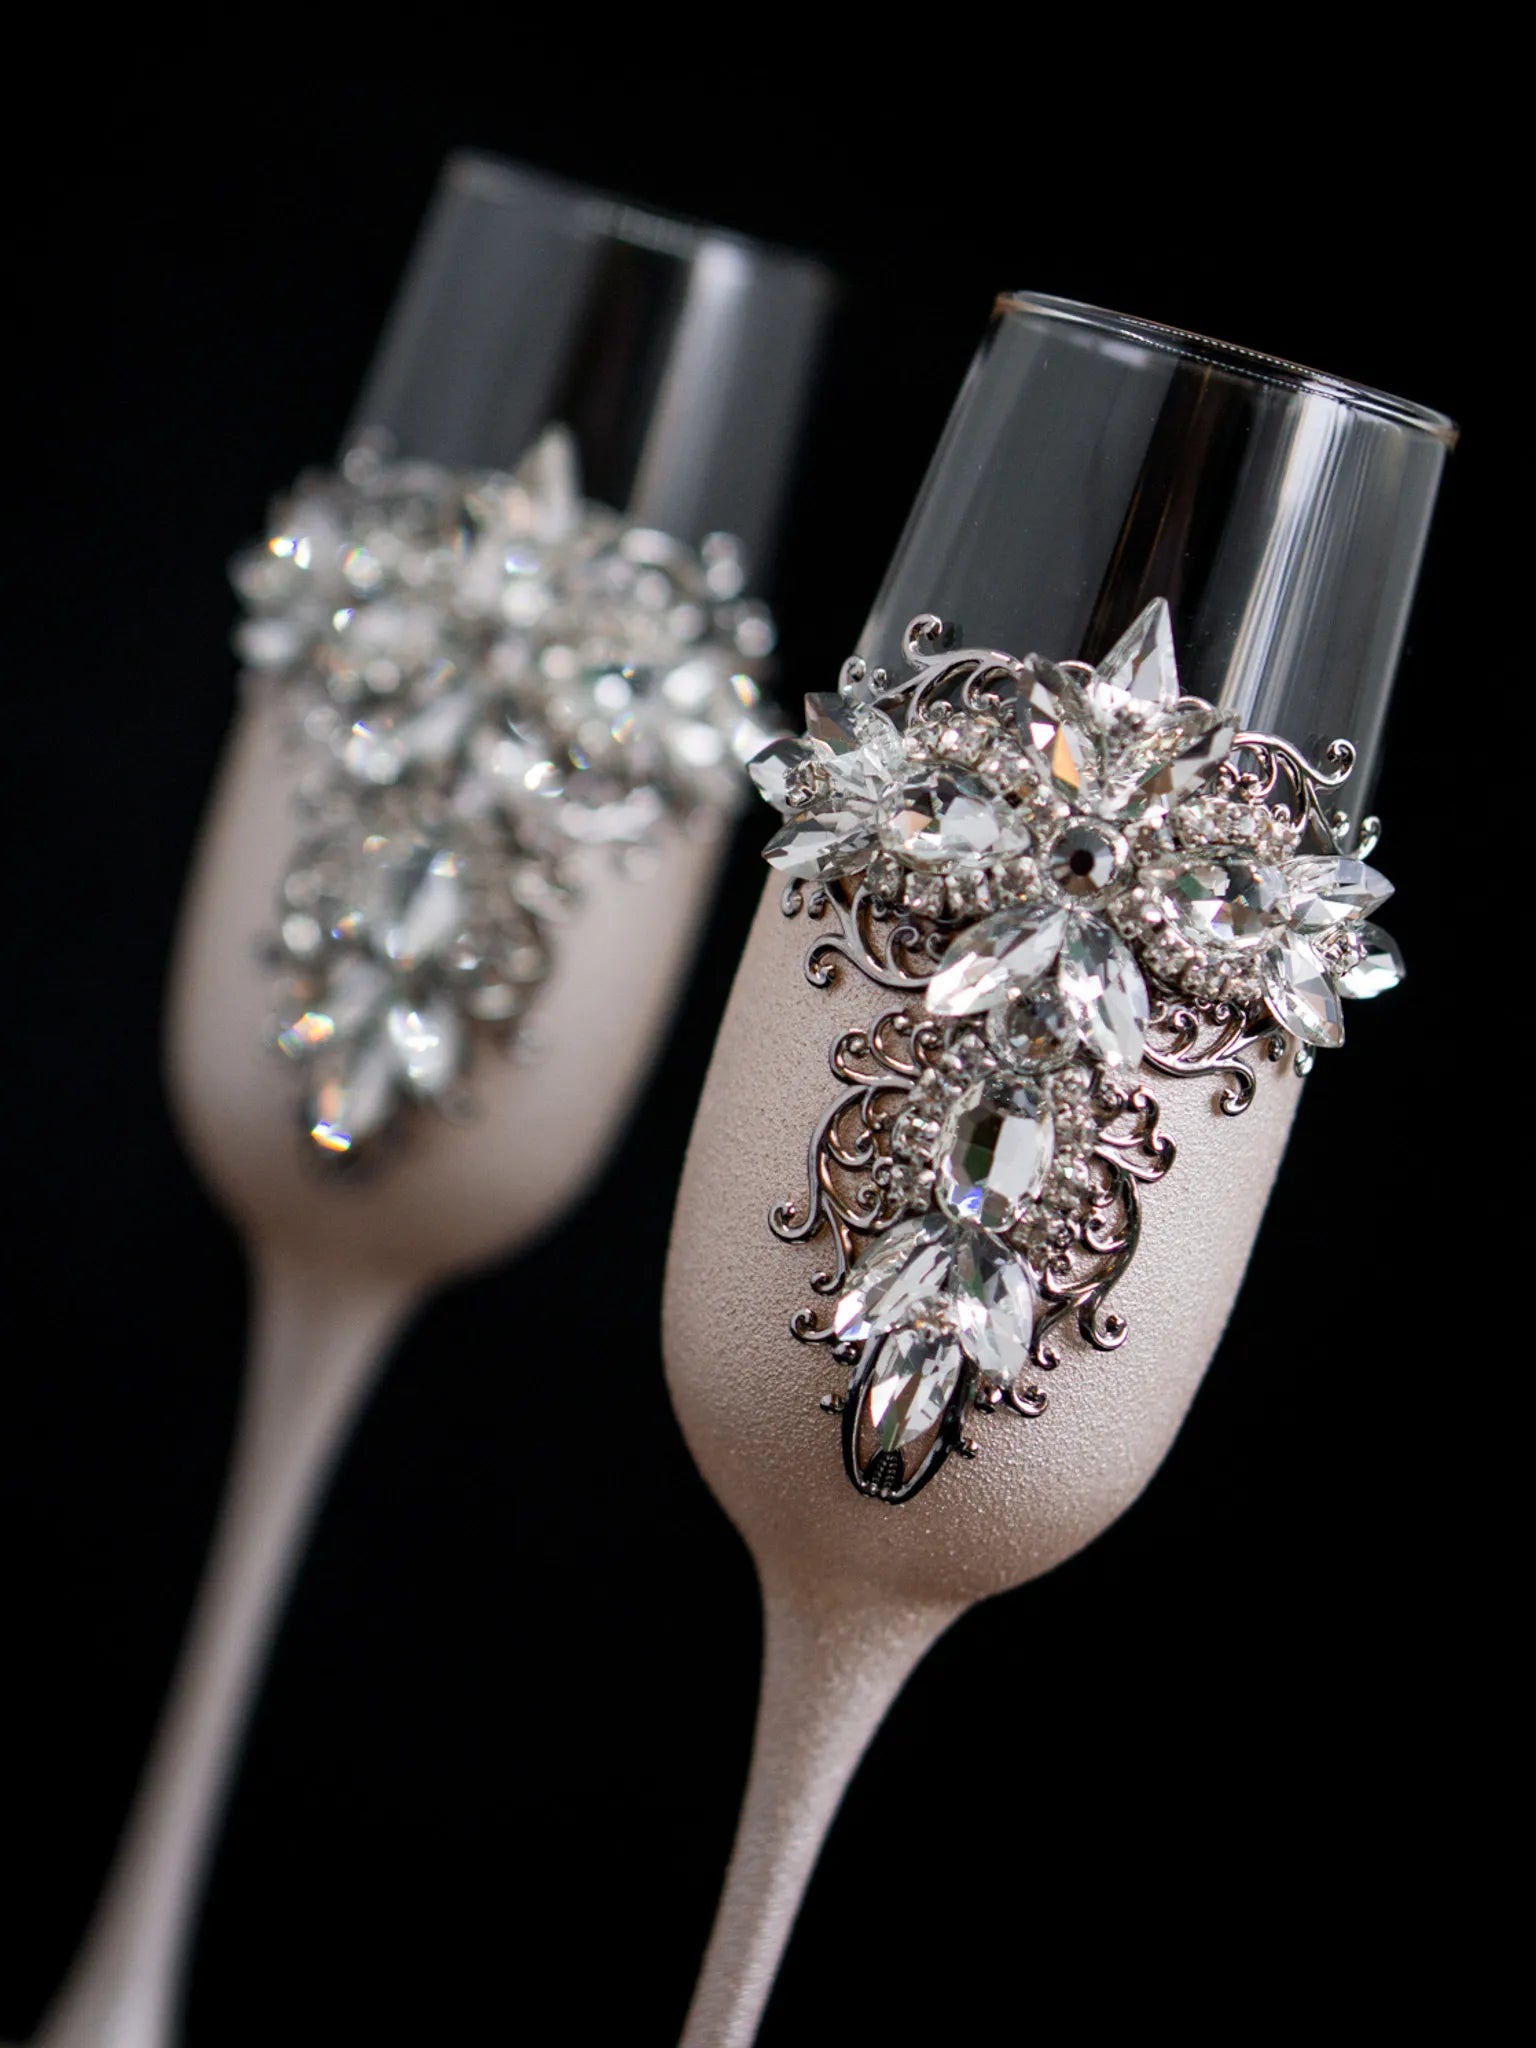 Elegant Ivory Themed Wedding Toast Glasses and Cake Set